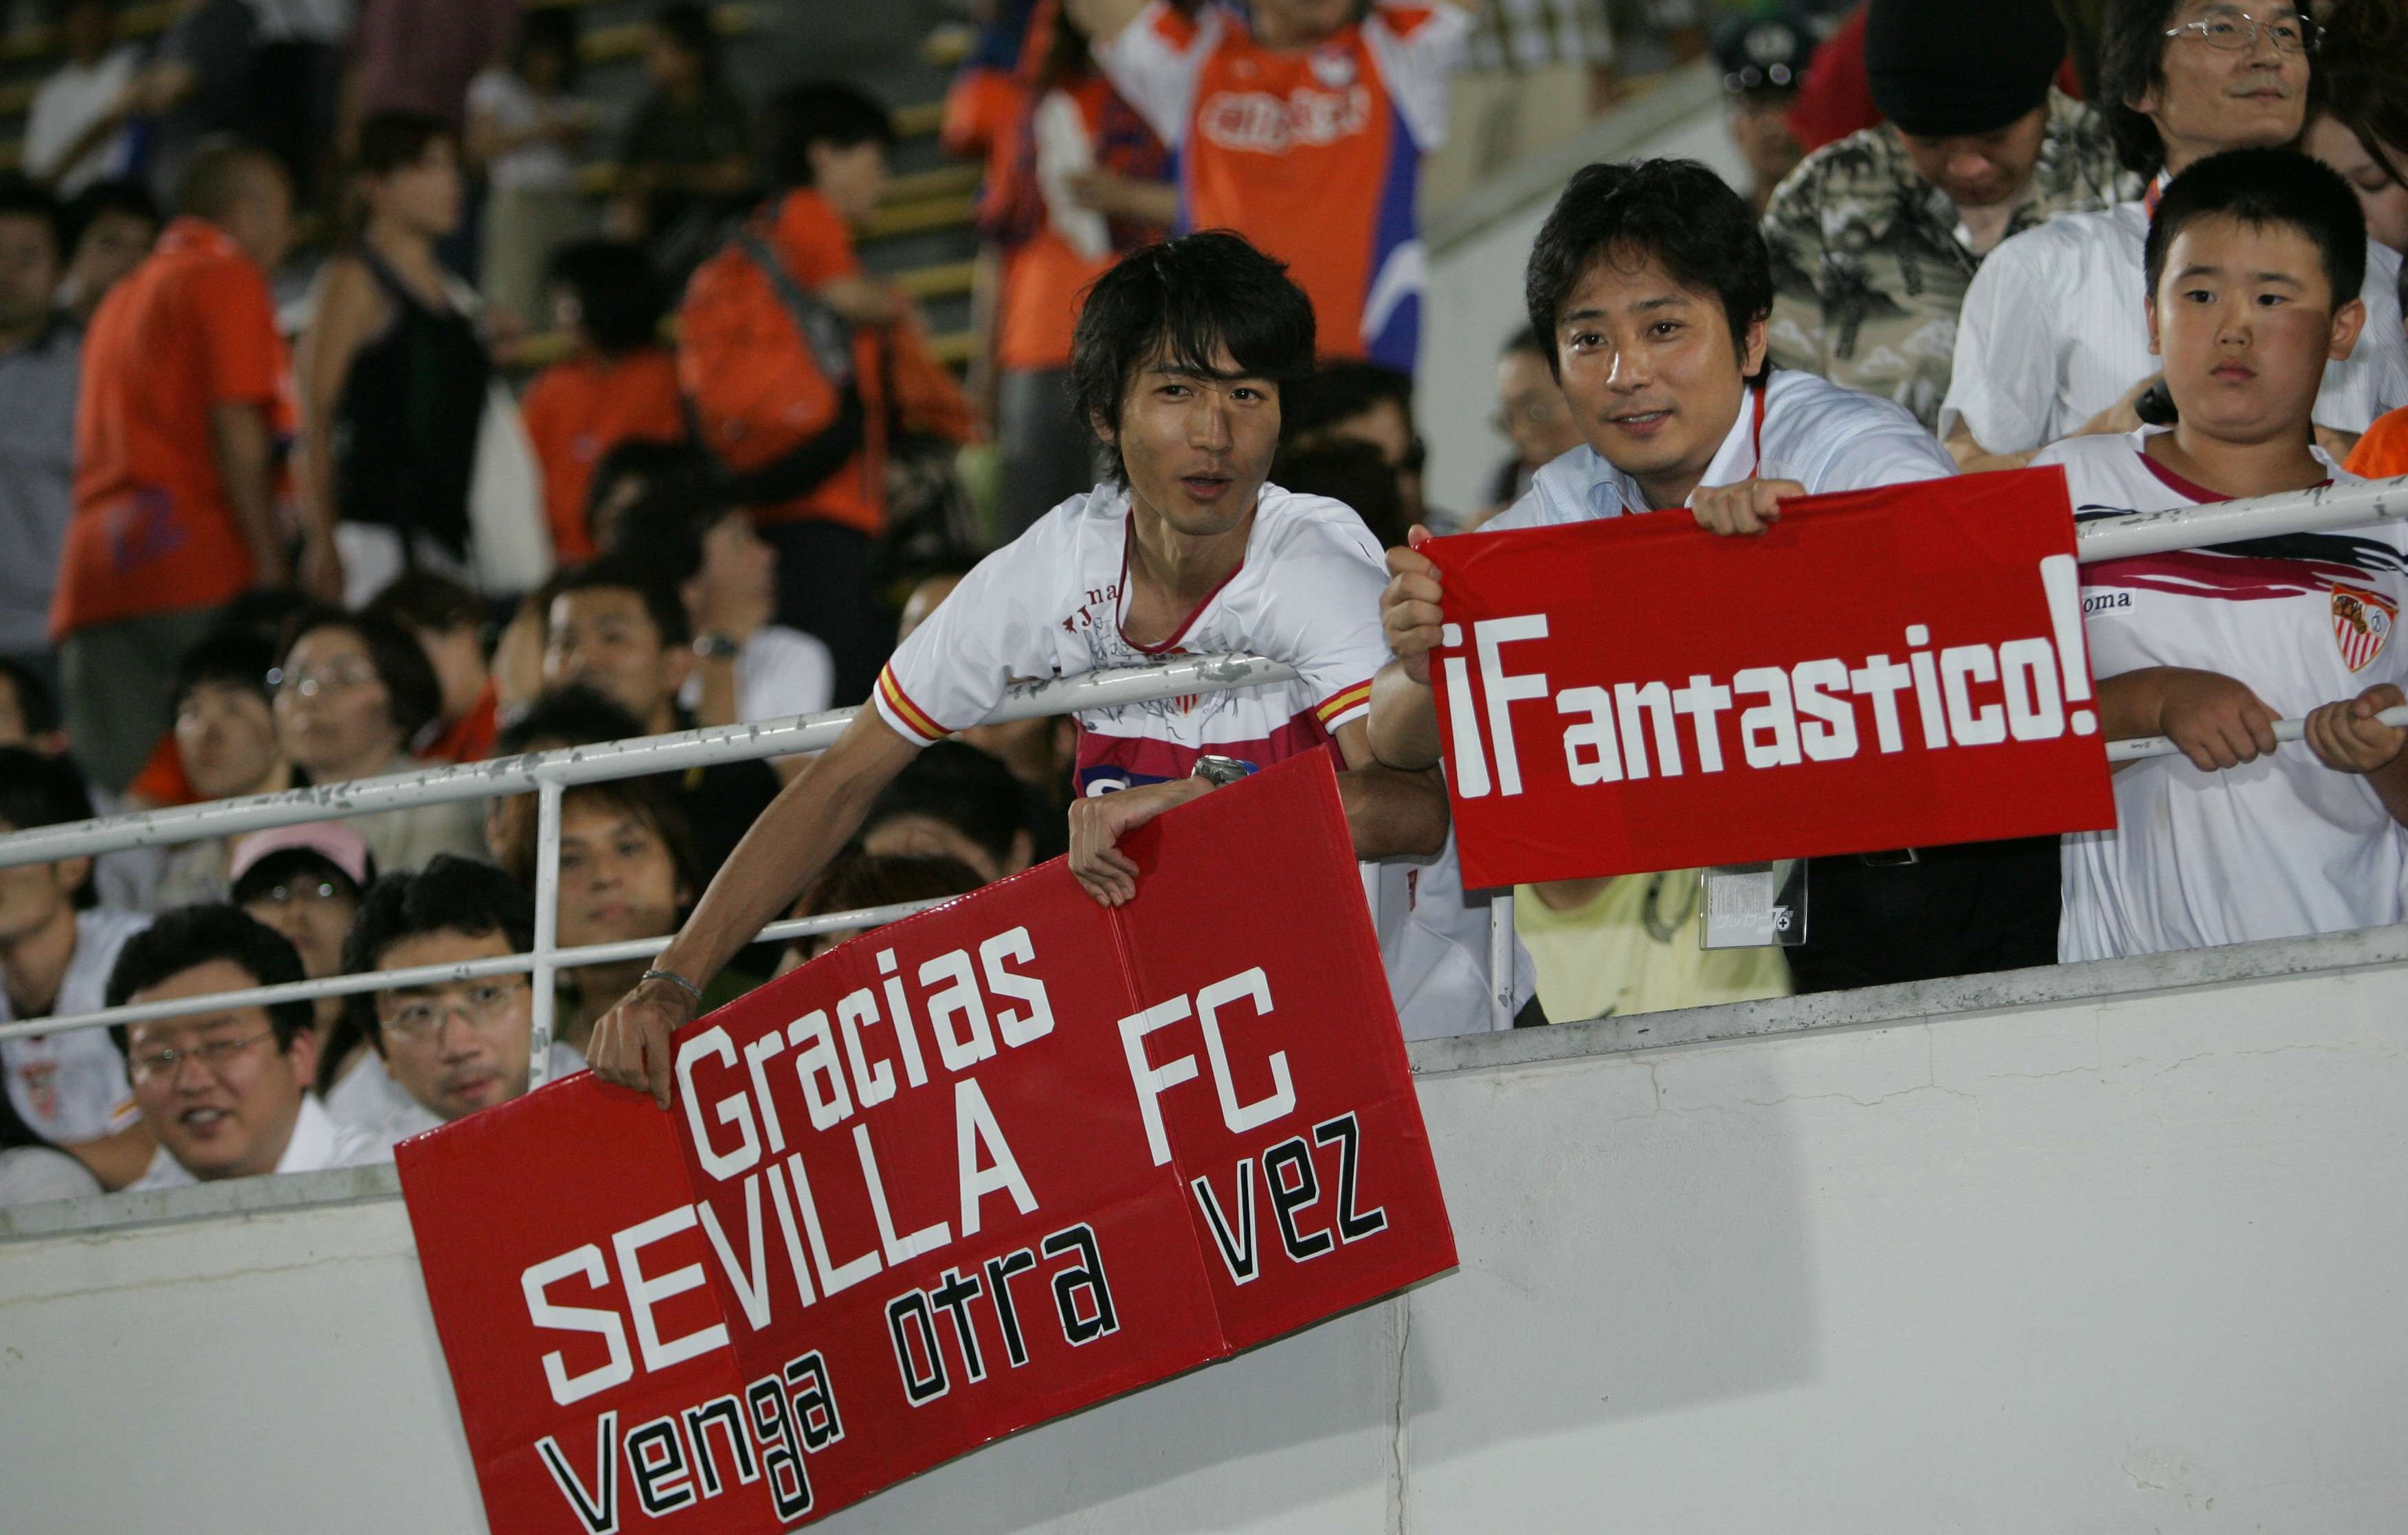 Sevilla FC in Japan in 2007